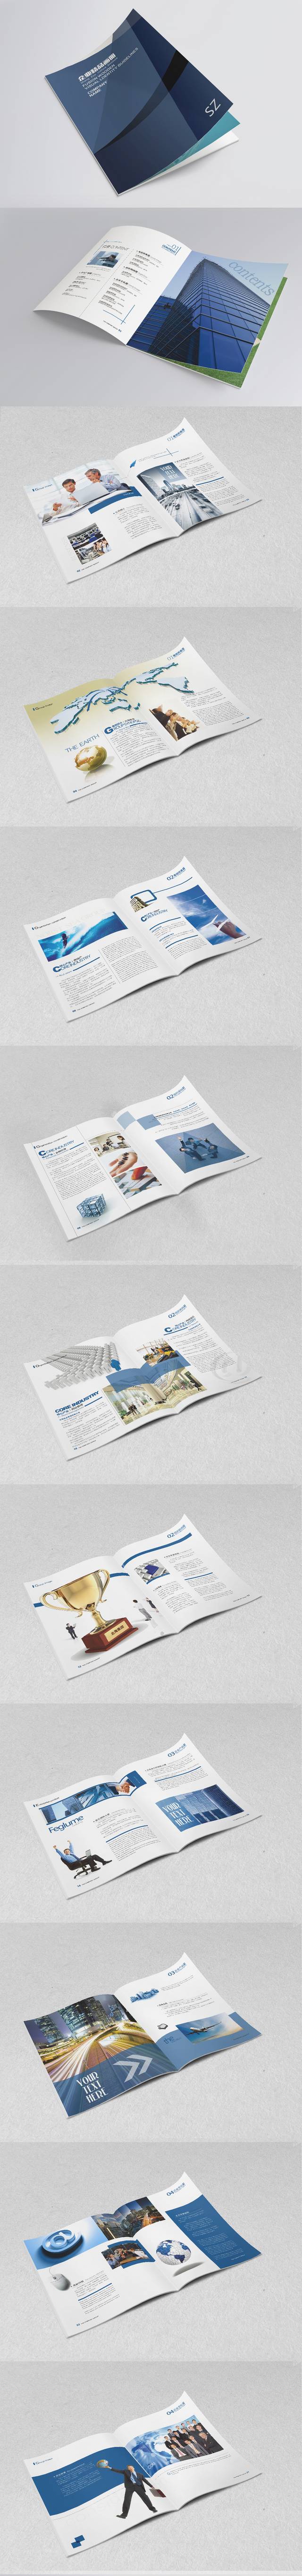 蓝色高档公司画册宣传设计